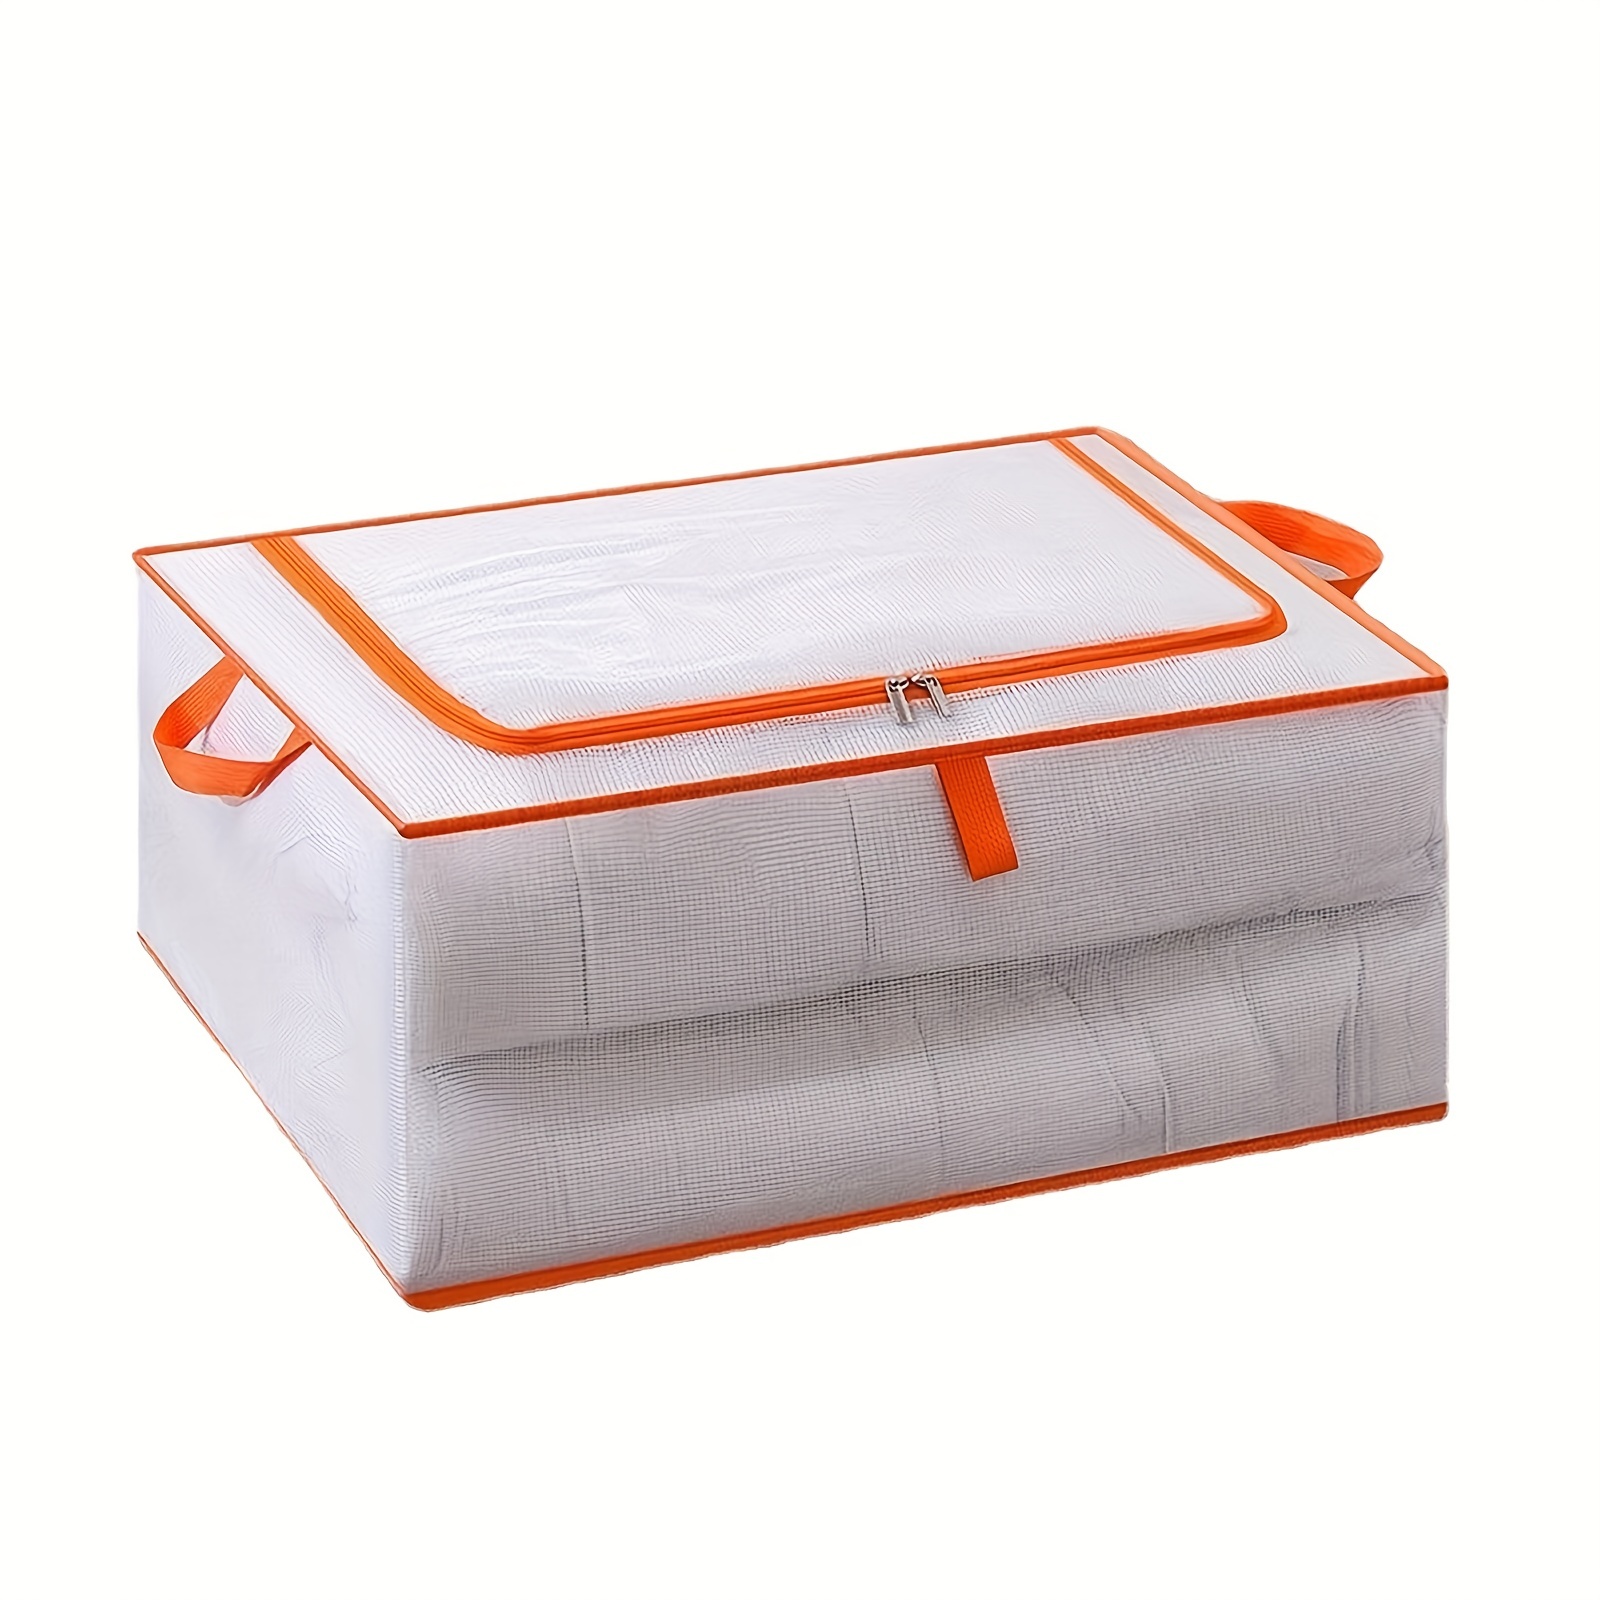 3pcs / 4pcs Durable Clothes Storage Bags with Handles - Foldable